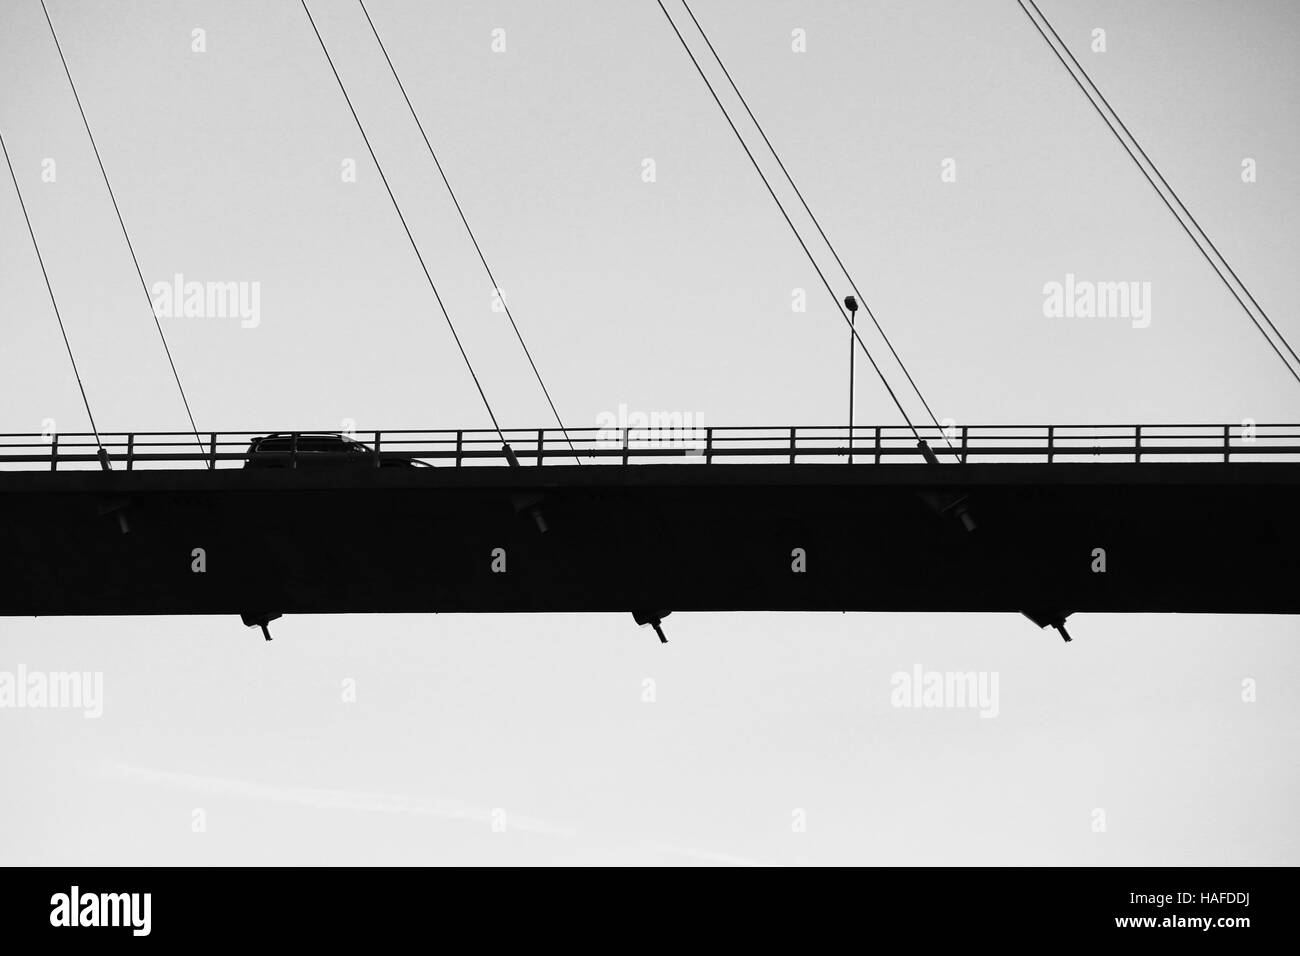 Auto fährt auf modernen Automobil Schrägseilbrücke in Norwegen, Silhouette schwarz / weiß Foto Stockfoto